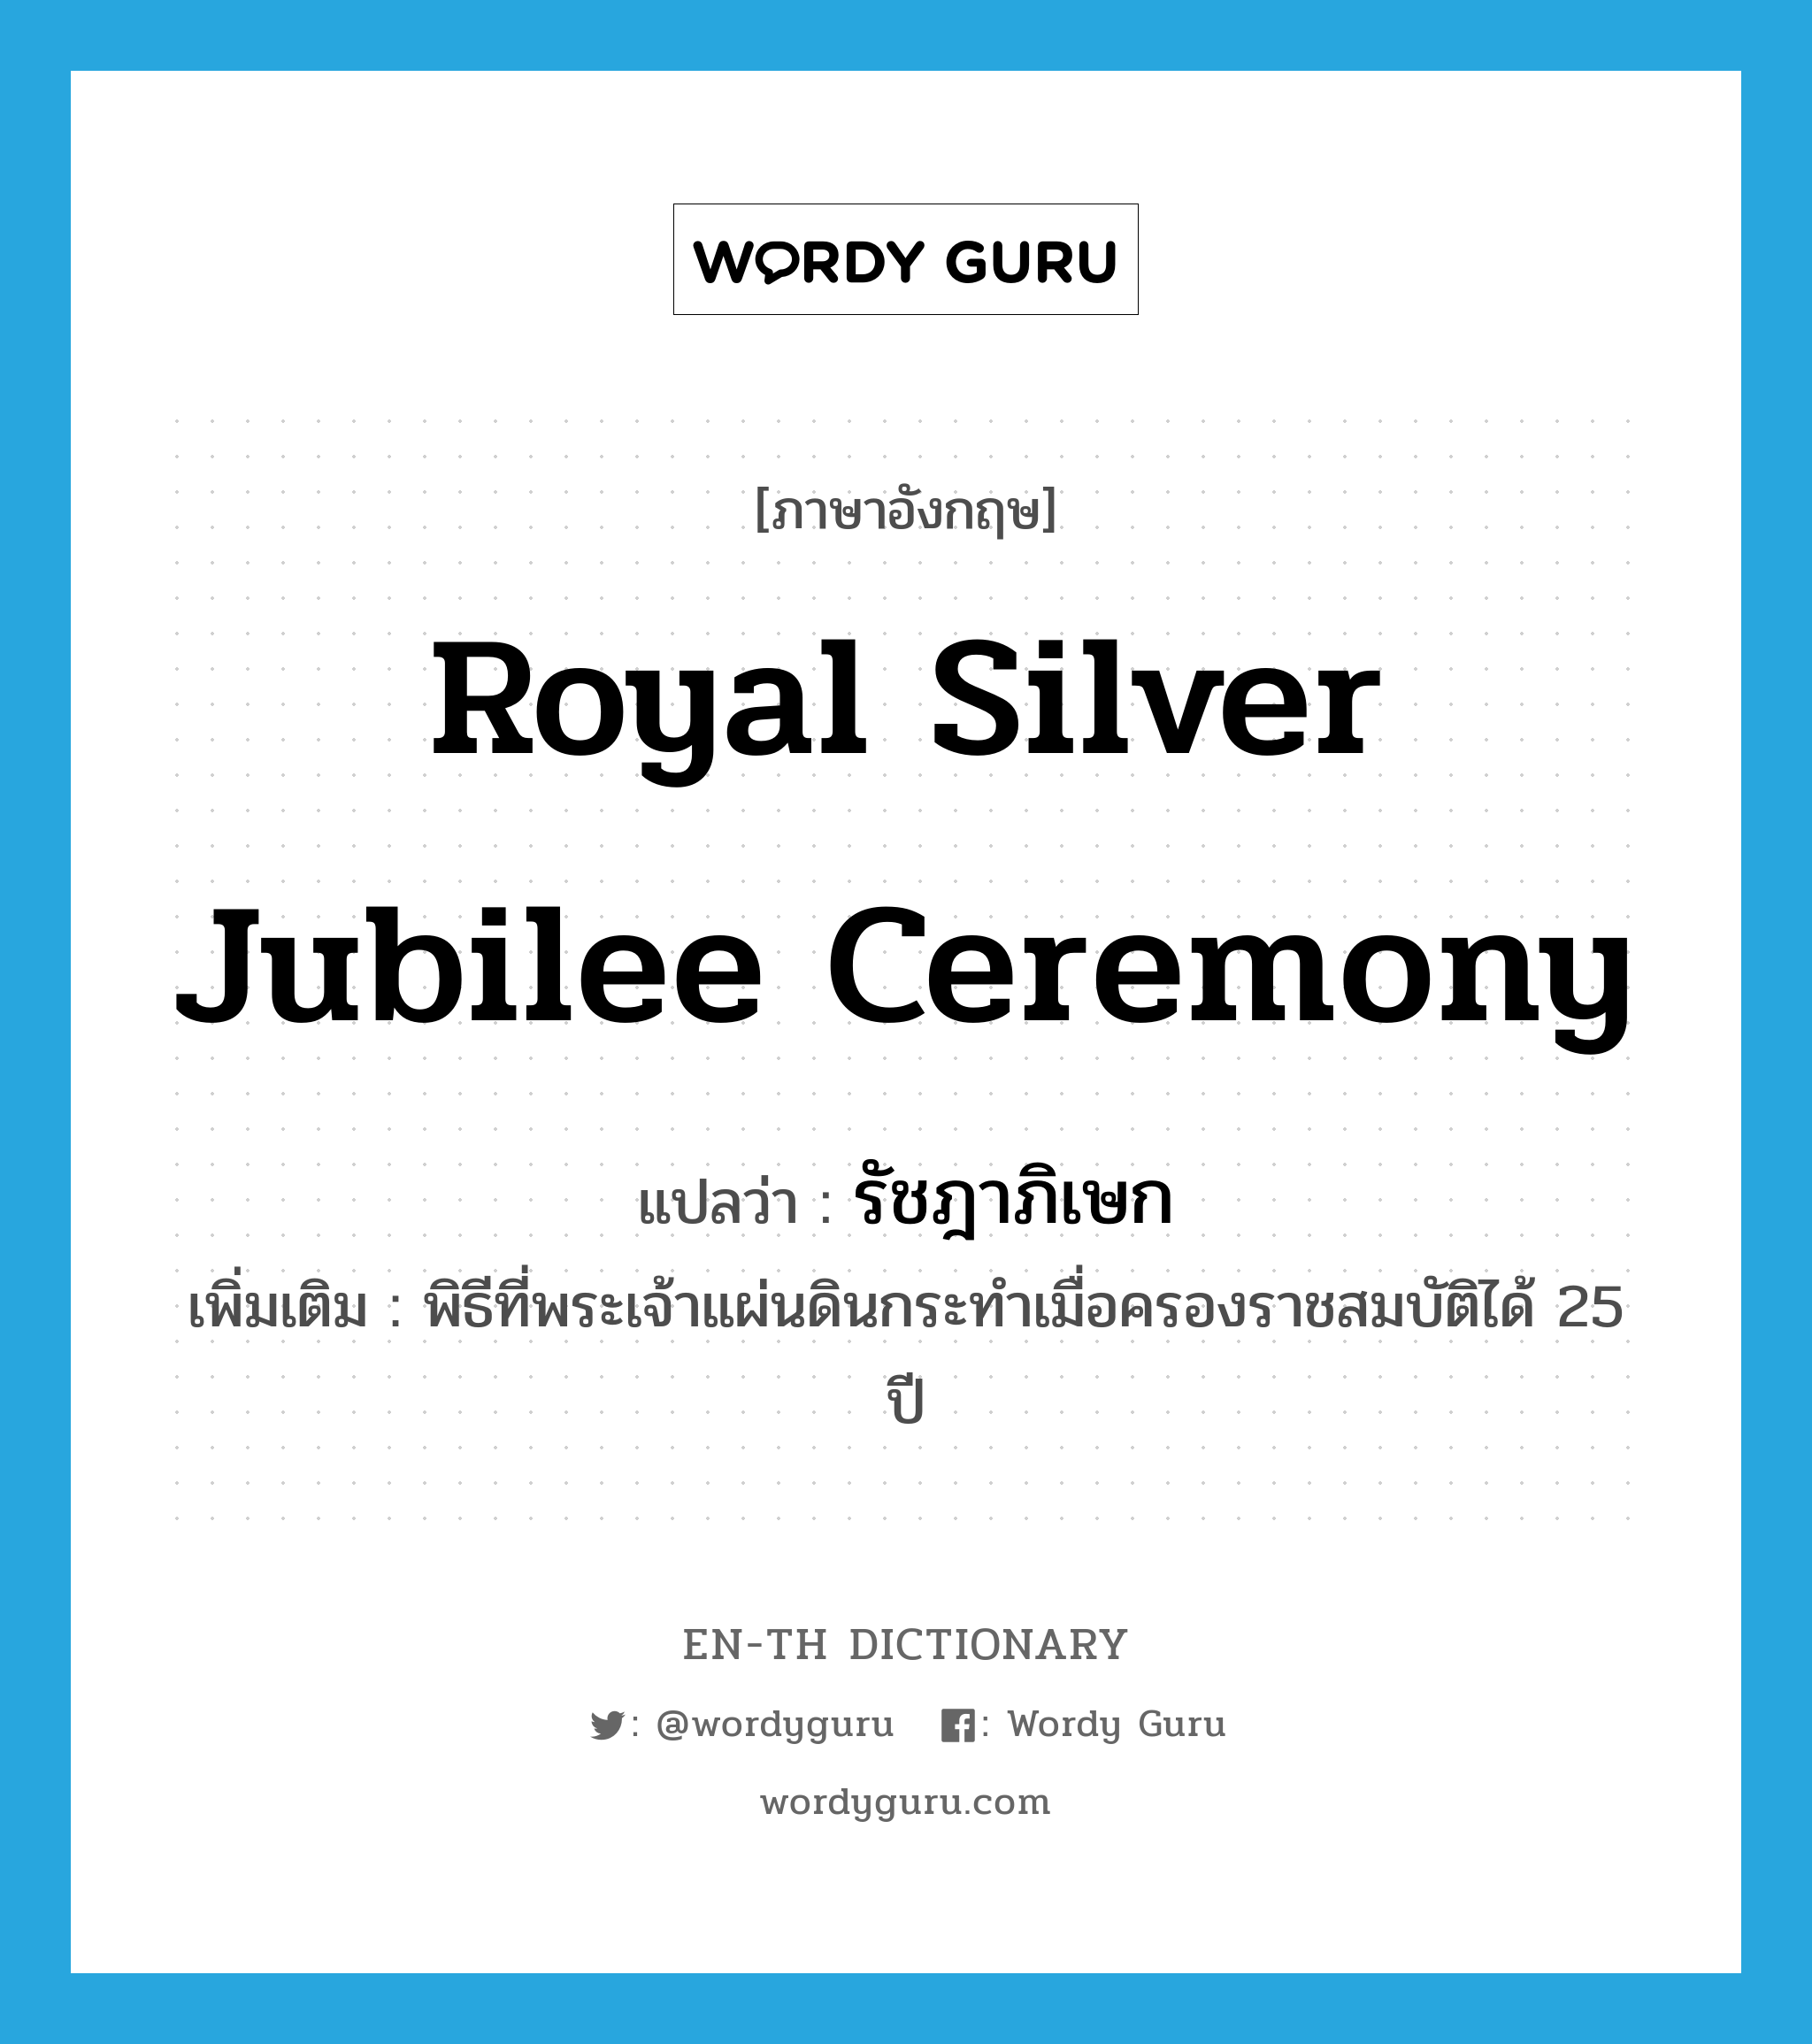 royal silver jubilee ceremony แปลว่า?, คำศัพท์ภาษาอังกฤษ royal silver jubilee ceremony แปลว่า รัชฎาภิเษก ประเภท N เพิ่มเติม พิธีที่พระเจ้าแผ่นดินกระทำเมื่อครองราชสมบัติได้ 25 ปี หมวด N